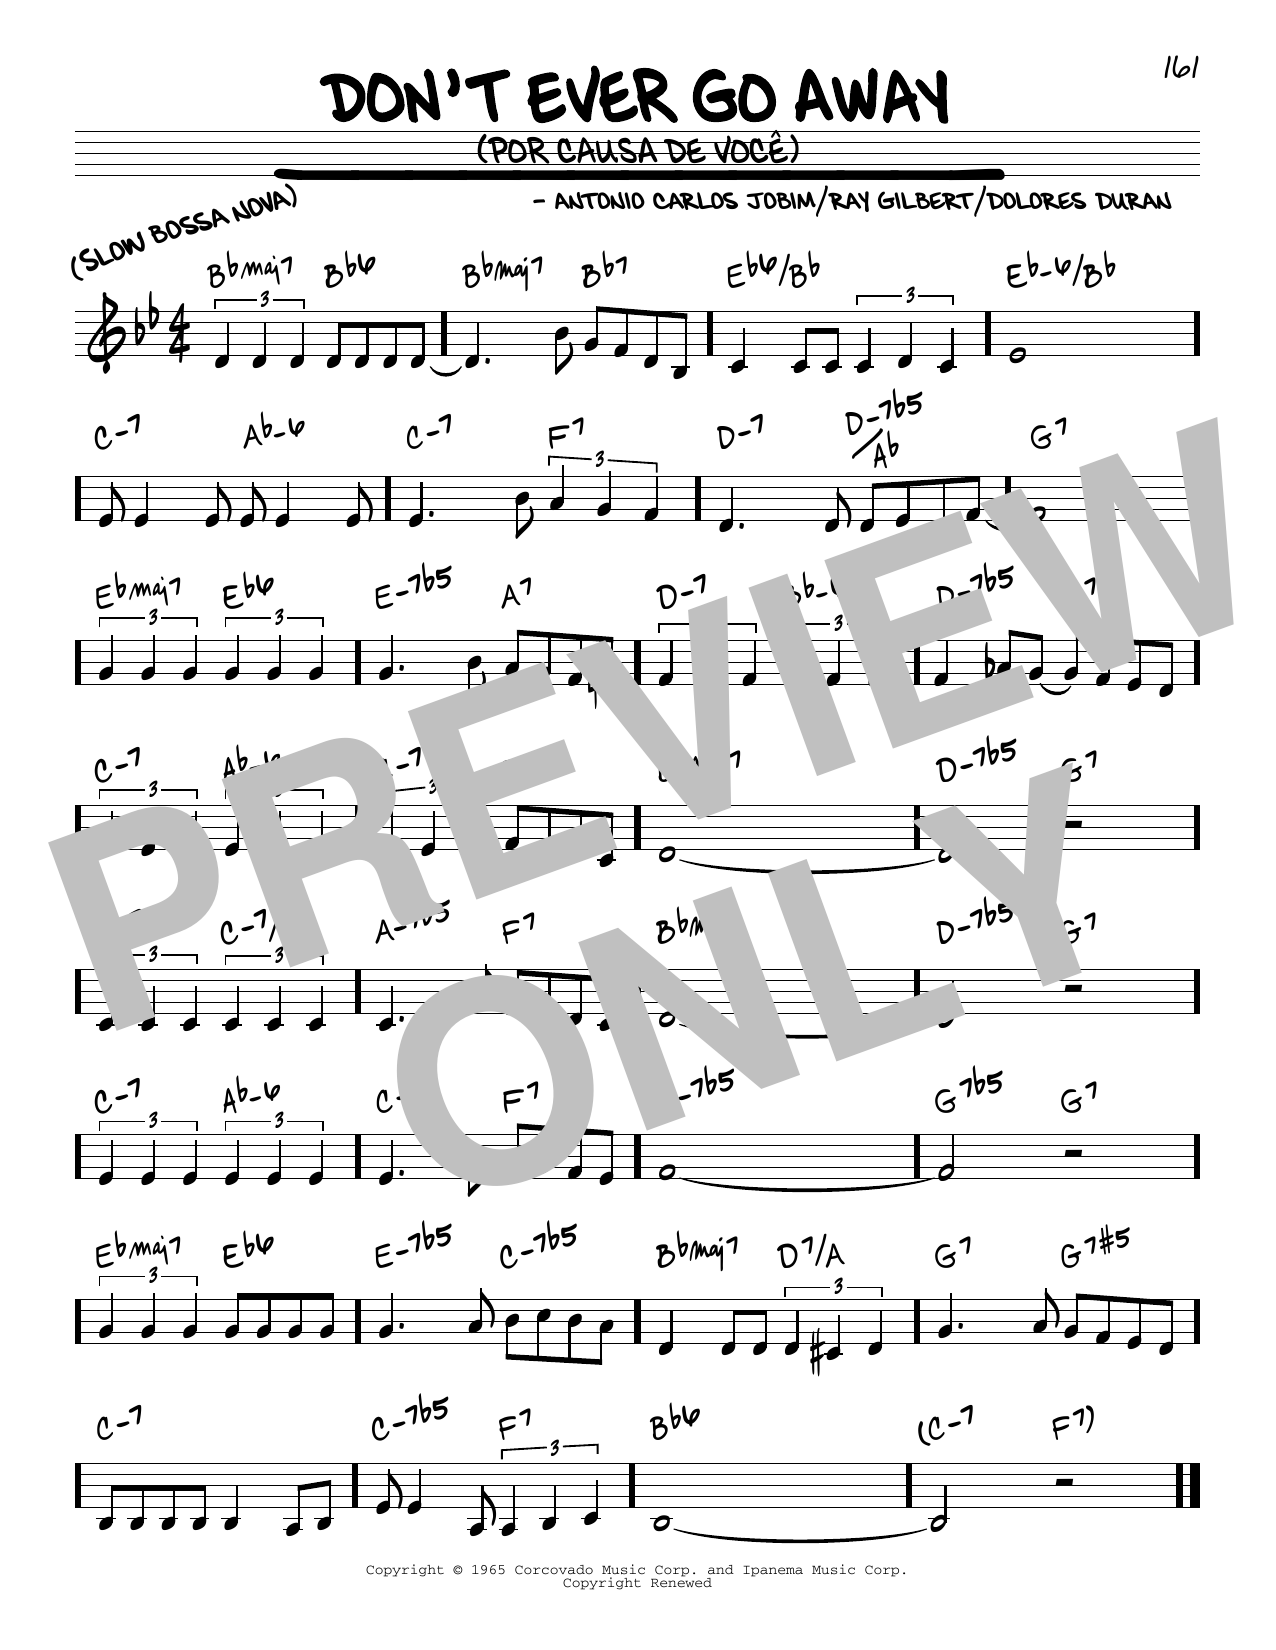 Download Antonio Carlos Jobim Don't Ever Go Away (Por Causa De Voce) Sheet Music